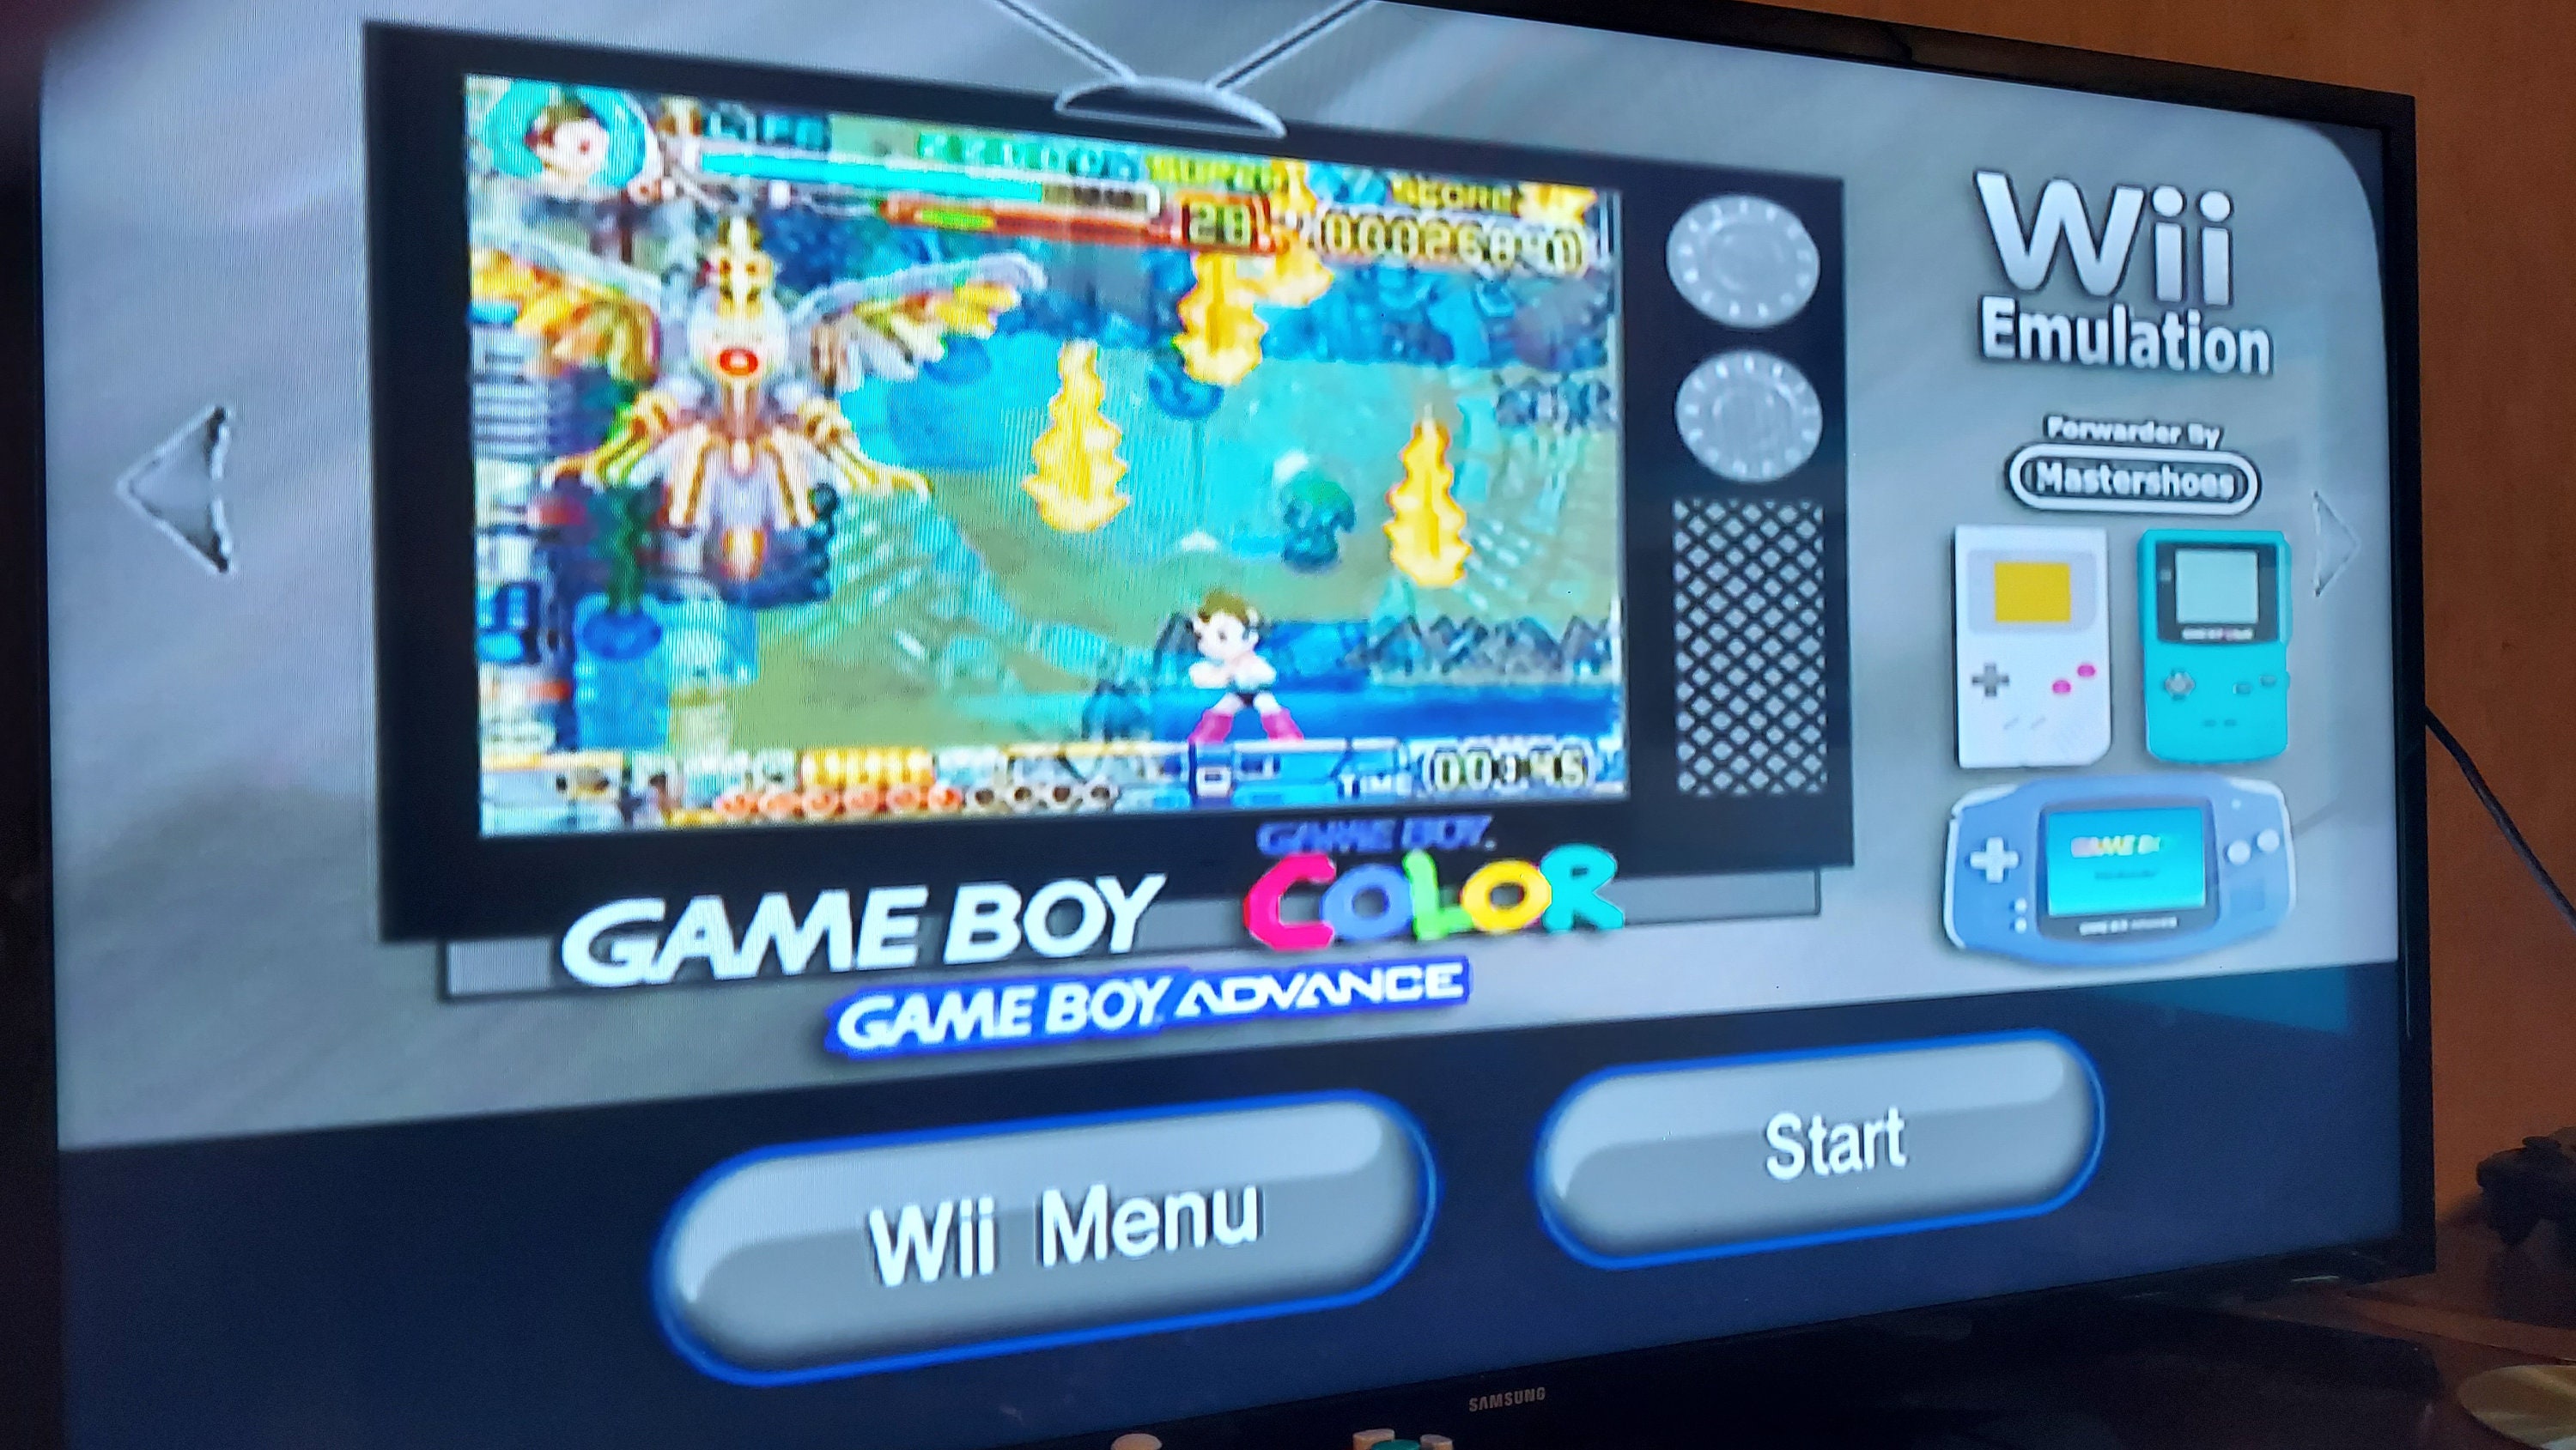 Nintendo Wii + Pen Drive 16Gb + 2000 Jogos Retro + 4 Jogos De Wii -  Gameplay do Boy